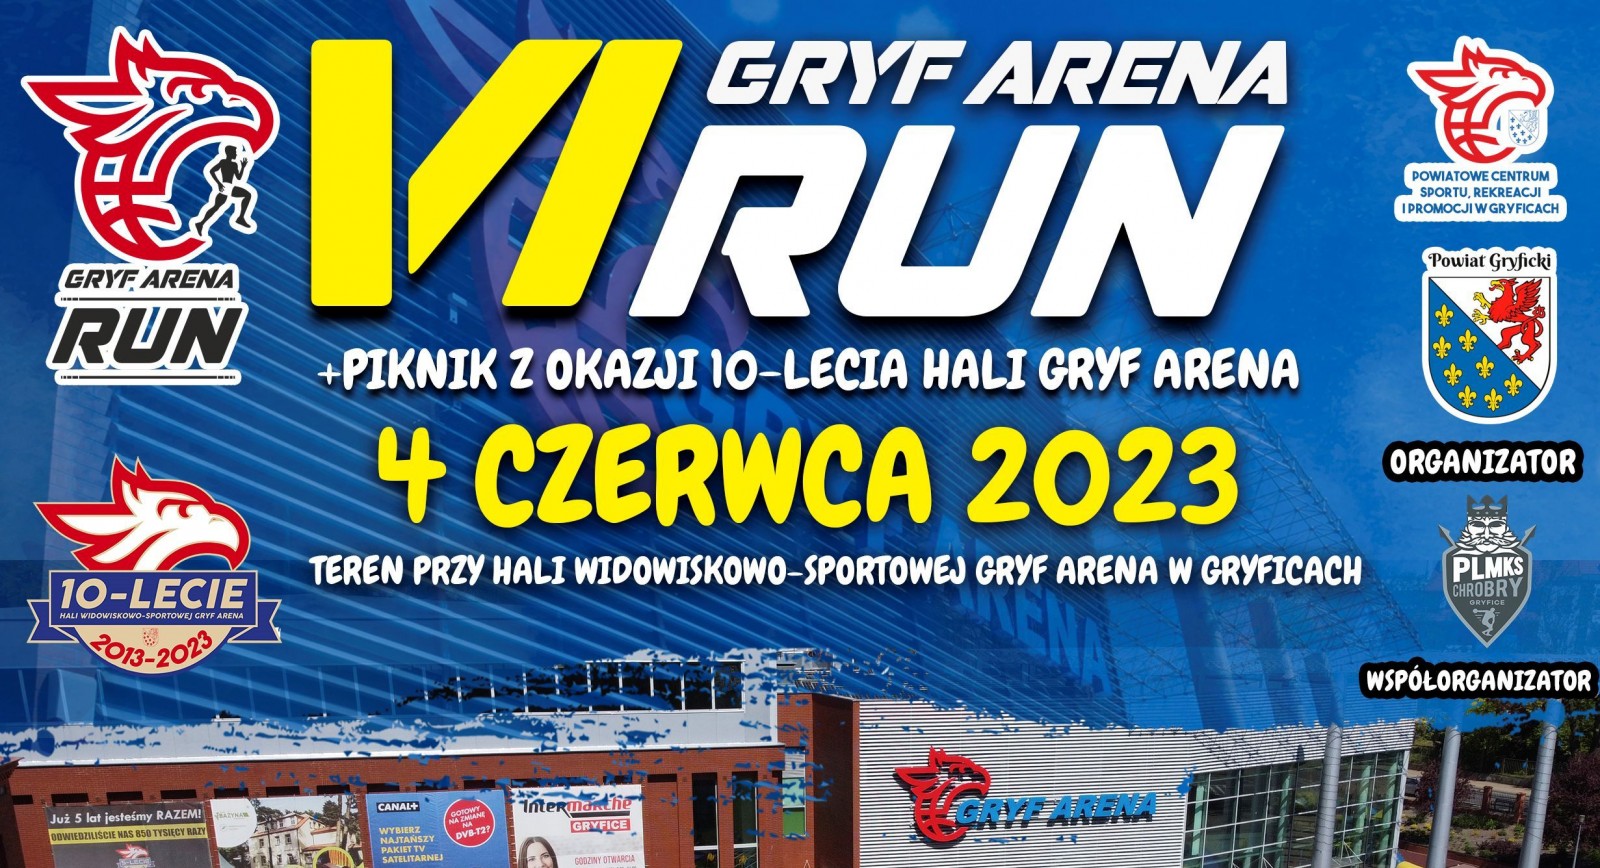 Utrudnienia ruchu w związku z biegiem Gryf Arena Run